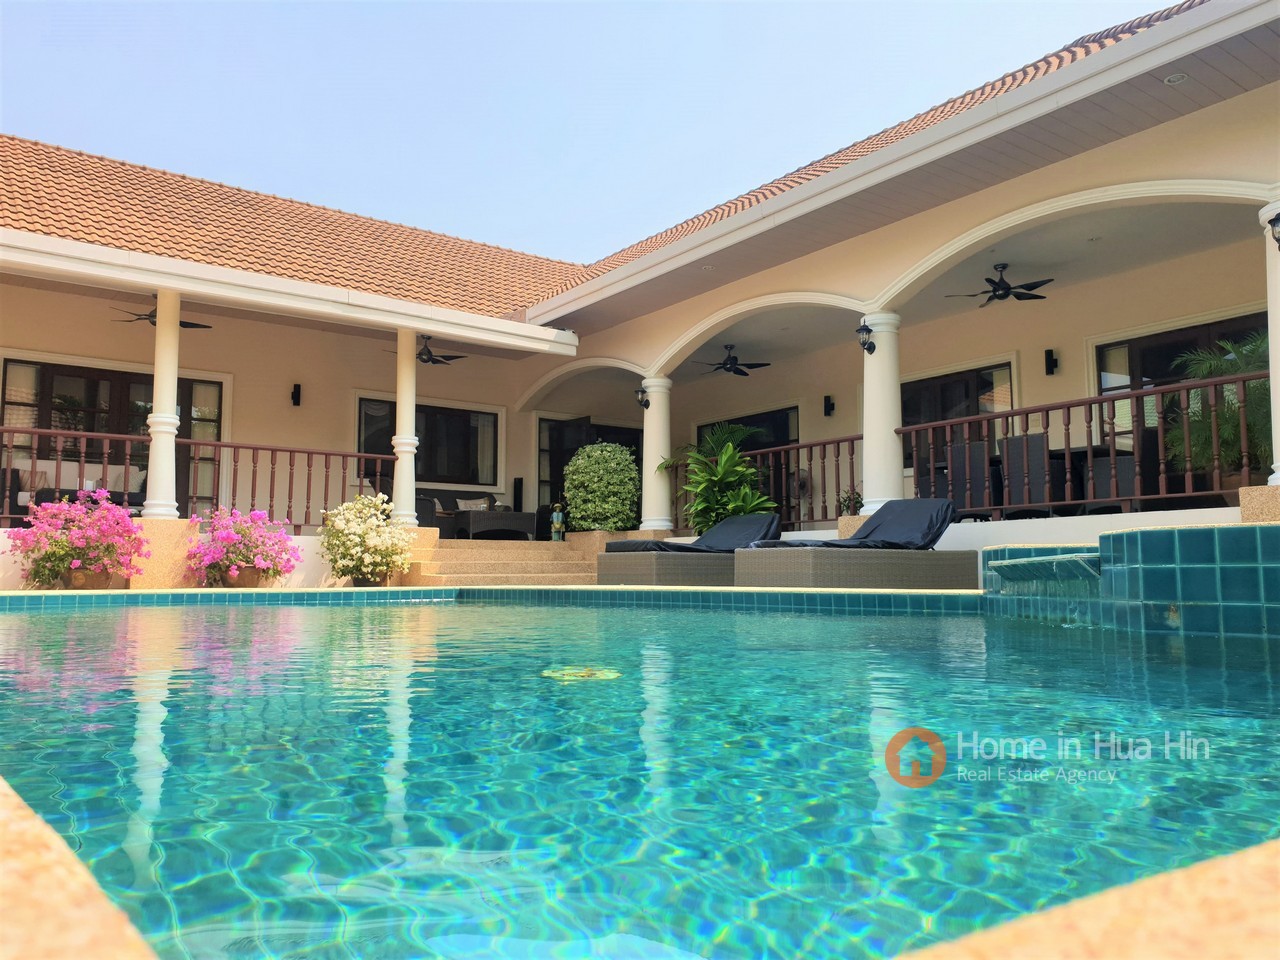 Stuart Park Hua Hin 4 Bedroom Luxury Pool Villa For Sale